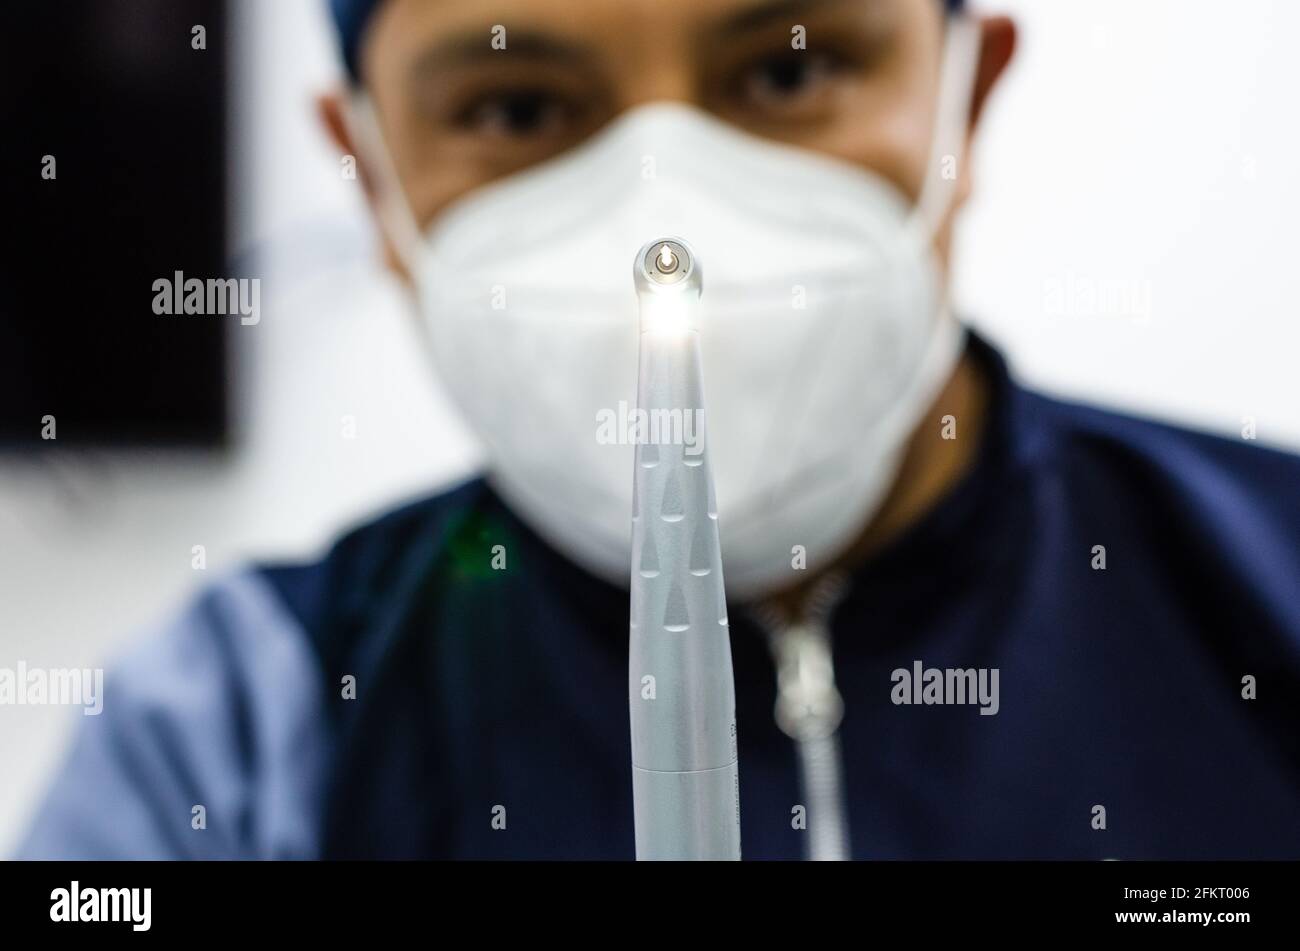 Immagine di un dentista con strumenti odontoiatrici in mani. Foto Stock